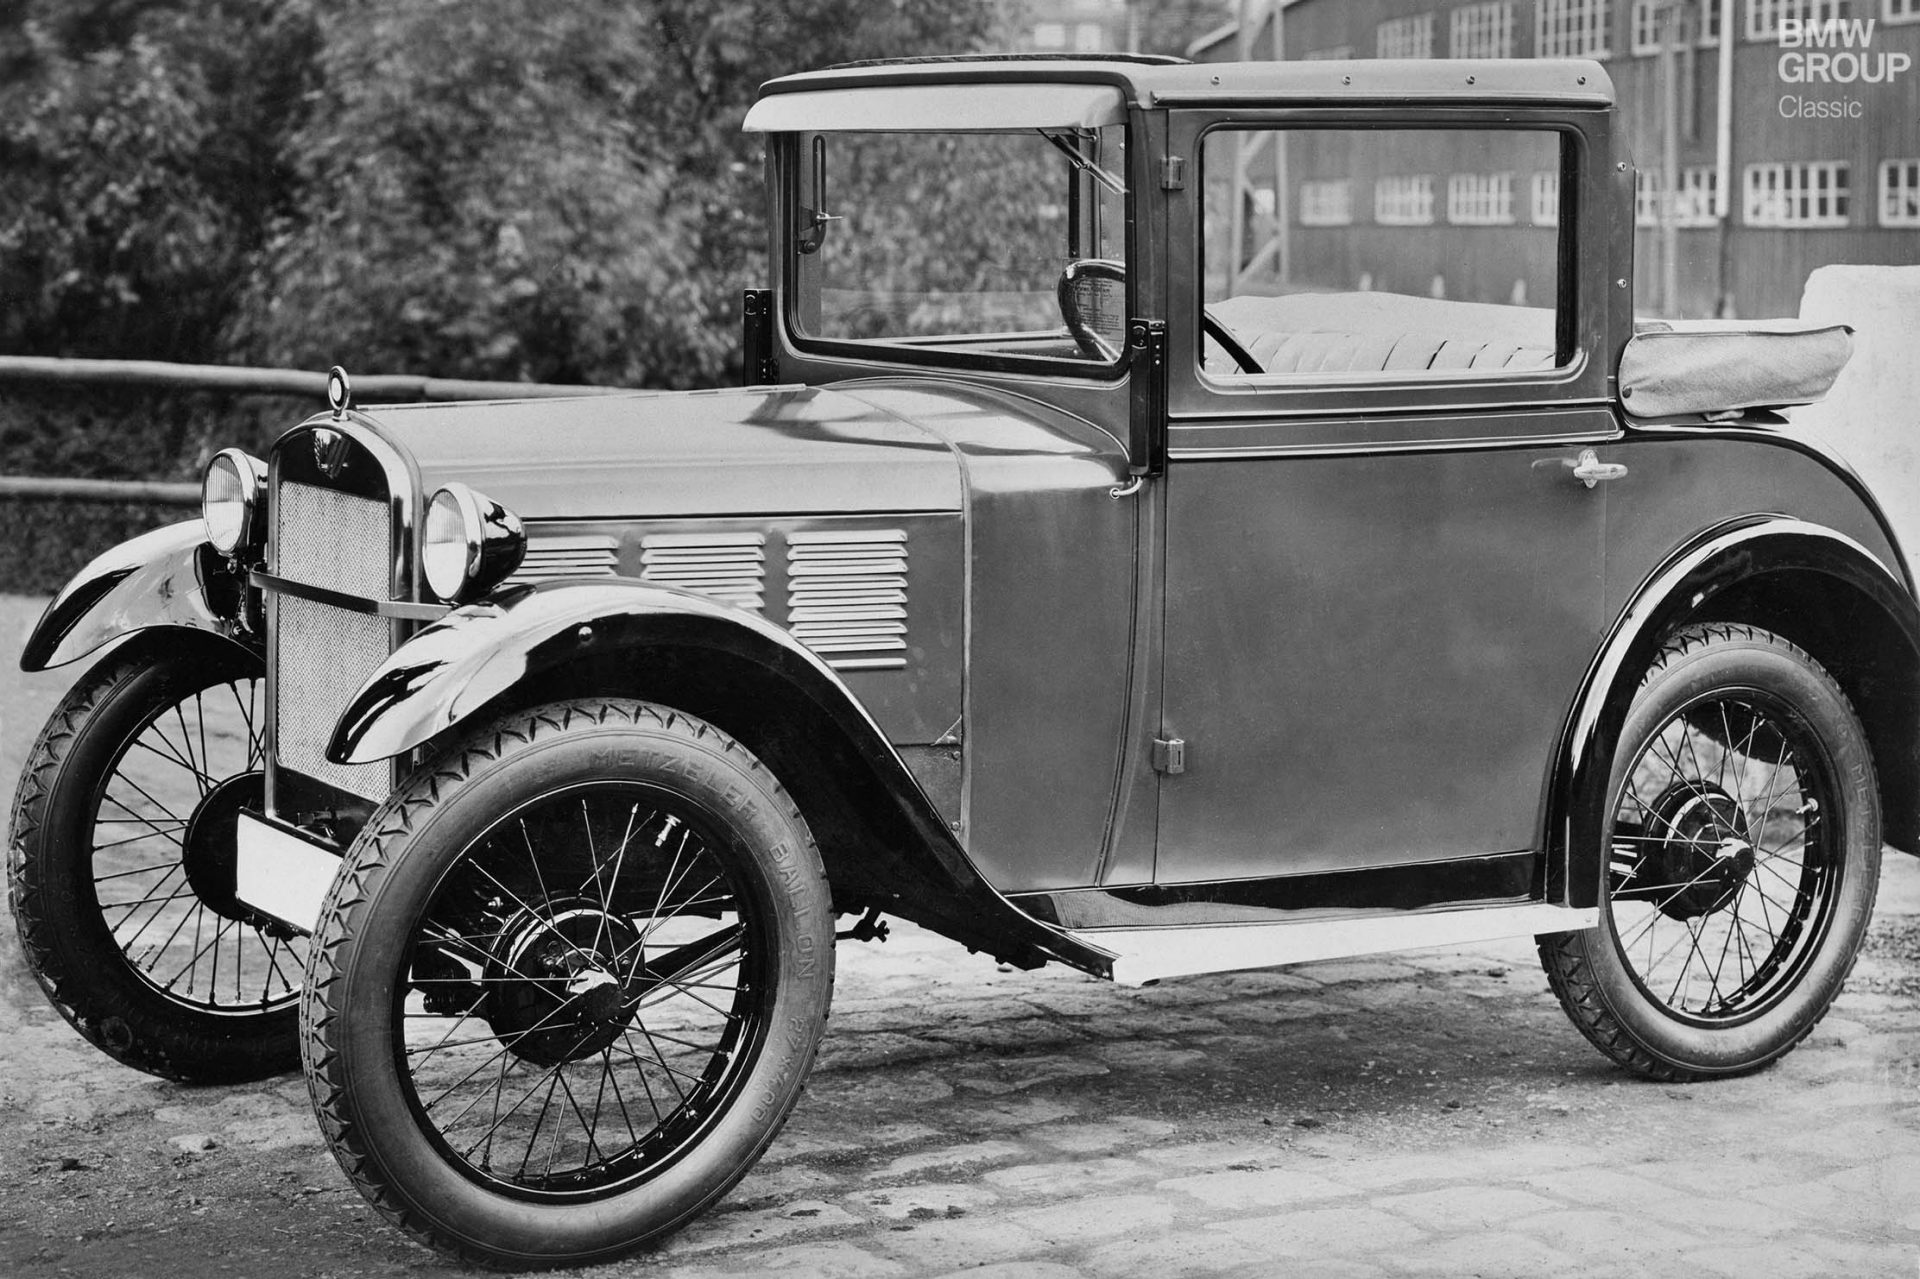 Mit dem BMW 3/15 startete bei BMW 1929 der Automobilbau. Hier ein BMW 3/15 DA 2 Kabriolett, fotografiert 1930.